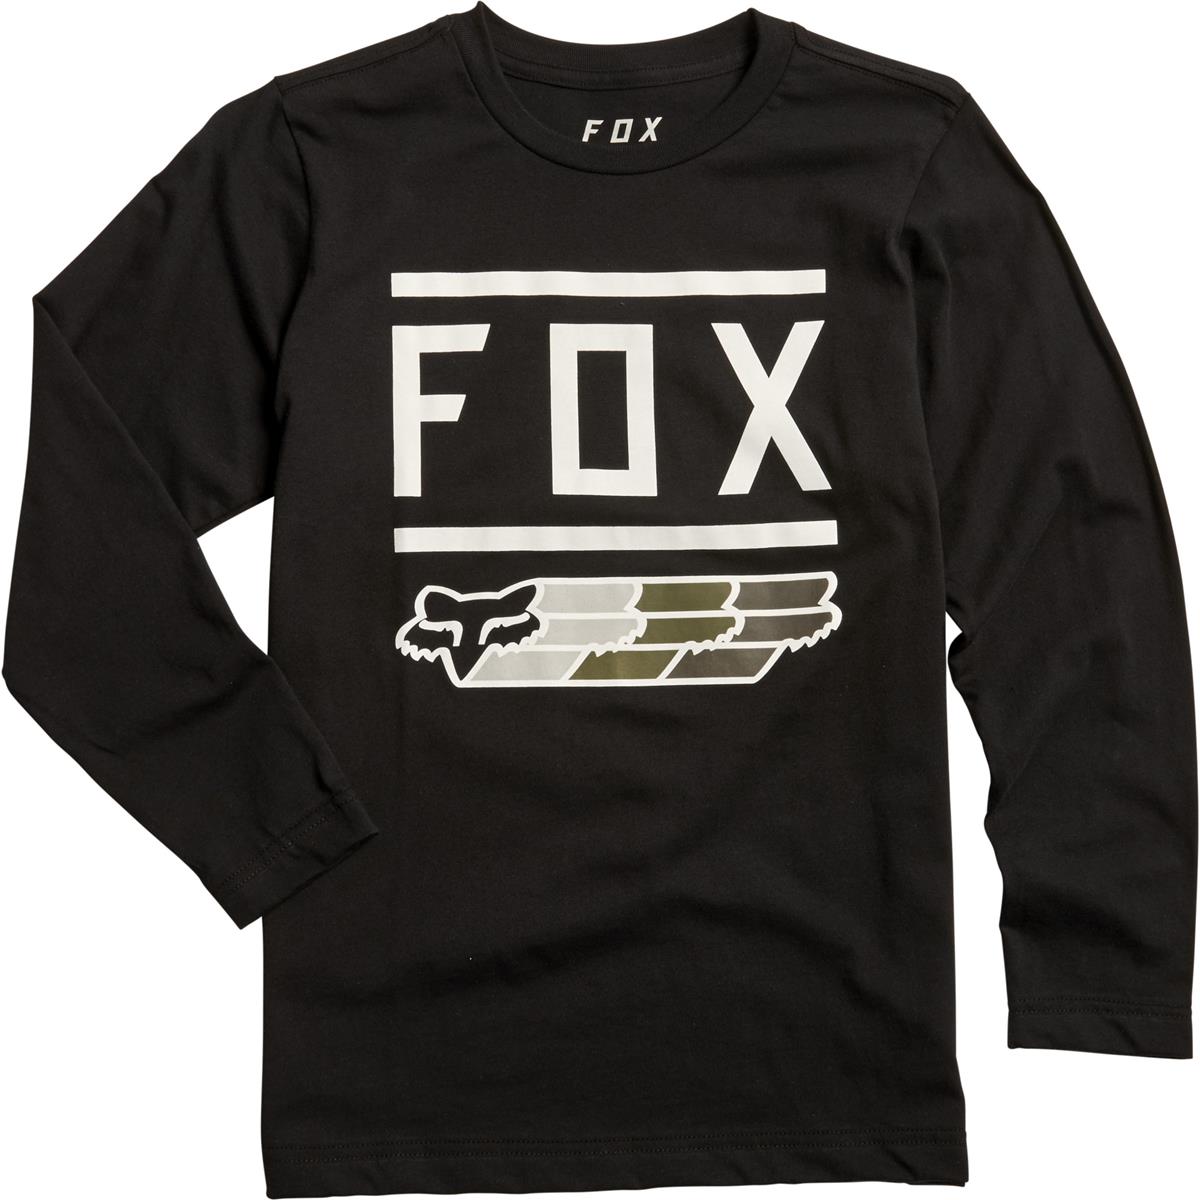 Fox Enfant T-Shirt Manches Longues Super Black